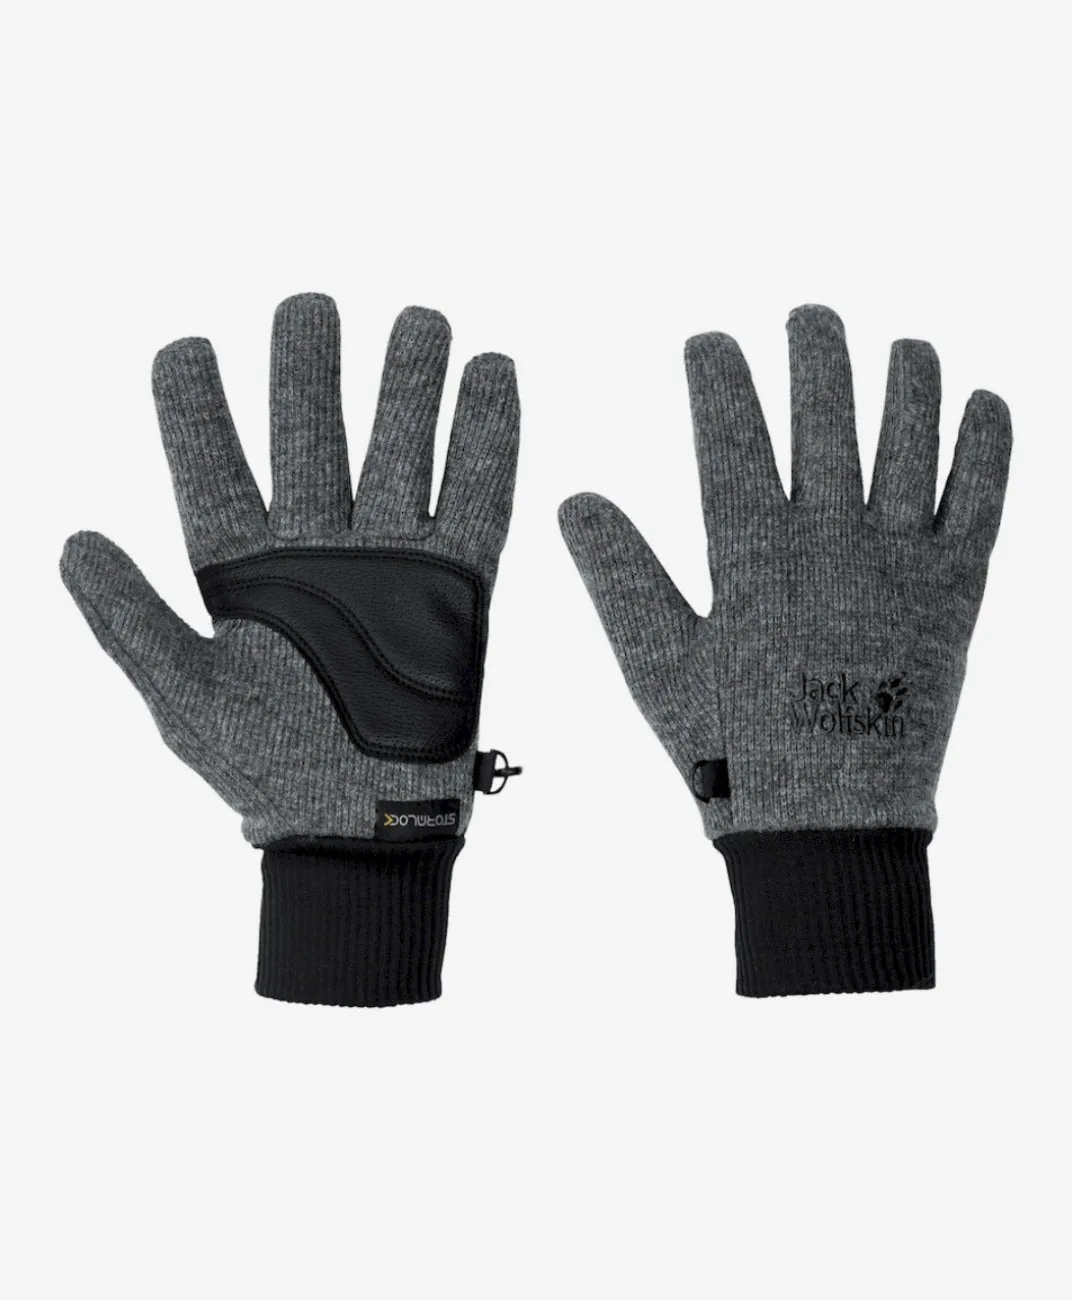 интернет-магазине - Wolfskin Перчатки Glove Knit Stormlock цвет серый в Jack купить